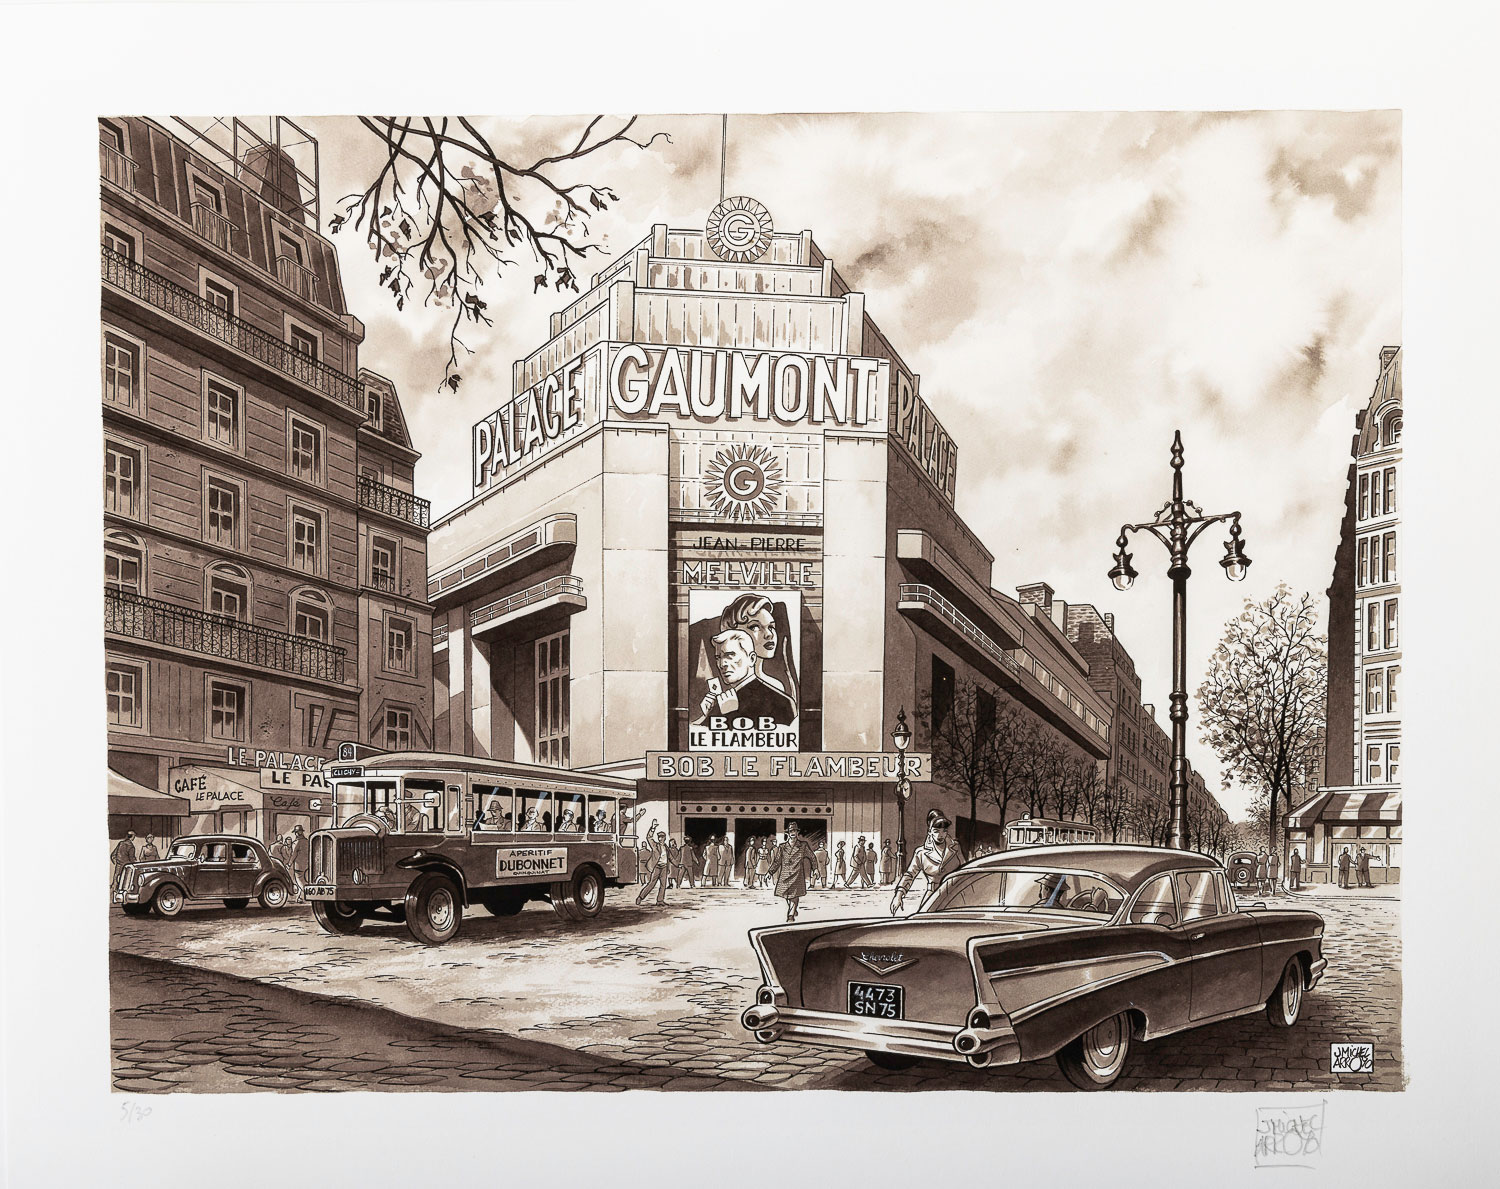 Estampe Pigmentaire signée Jean-Michel Arroyo : Gaumont Palace